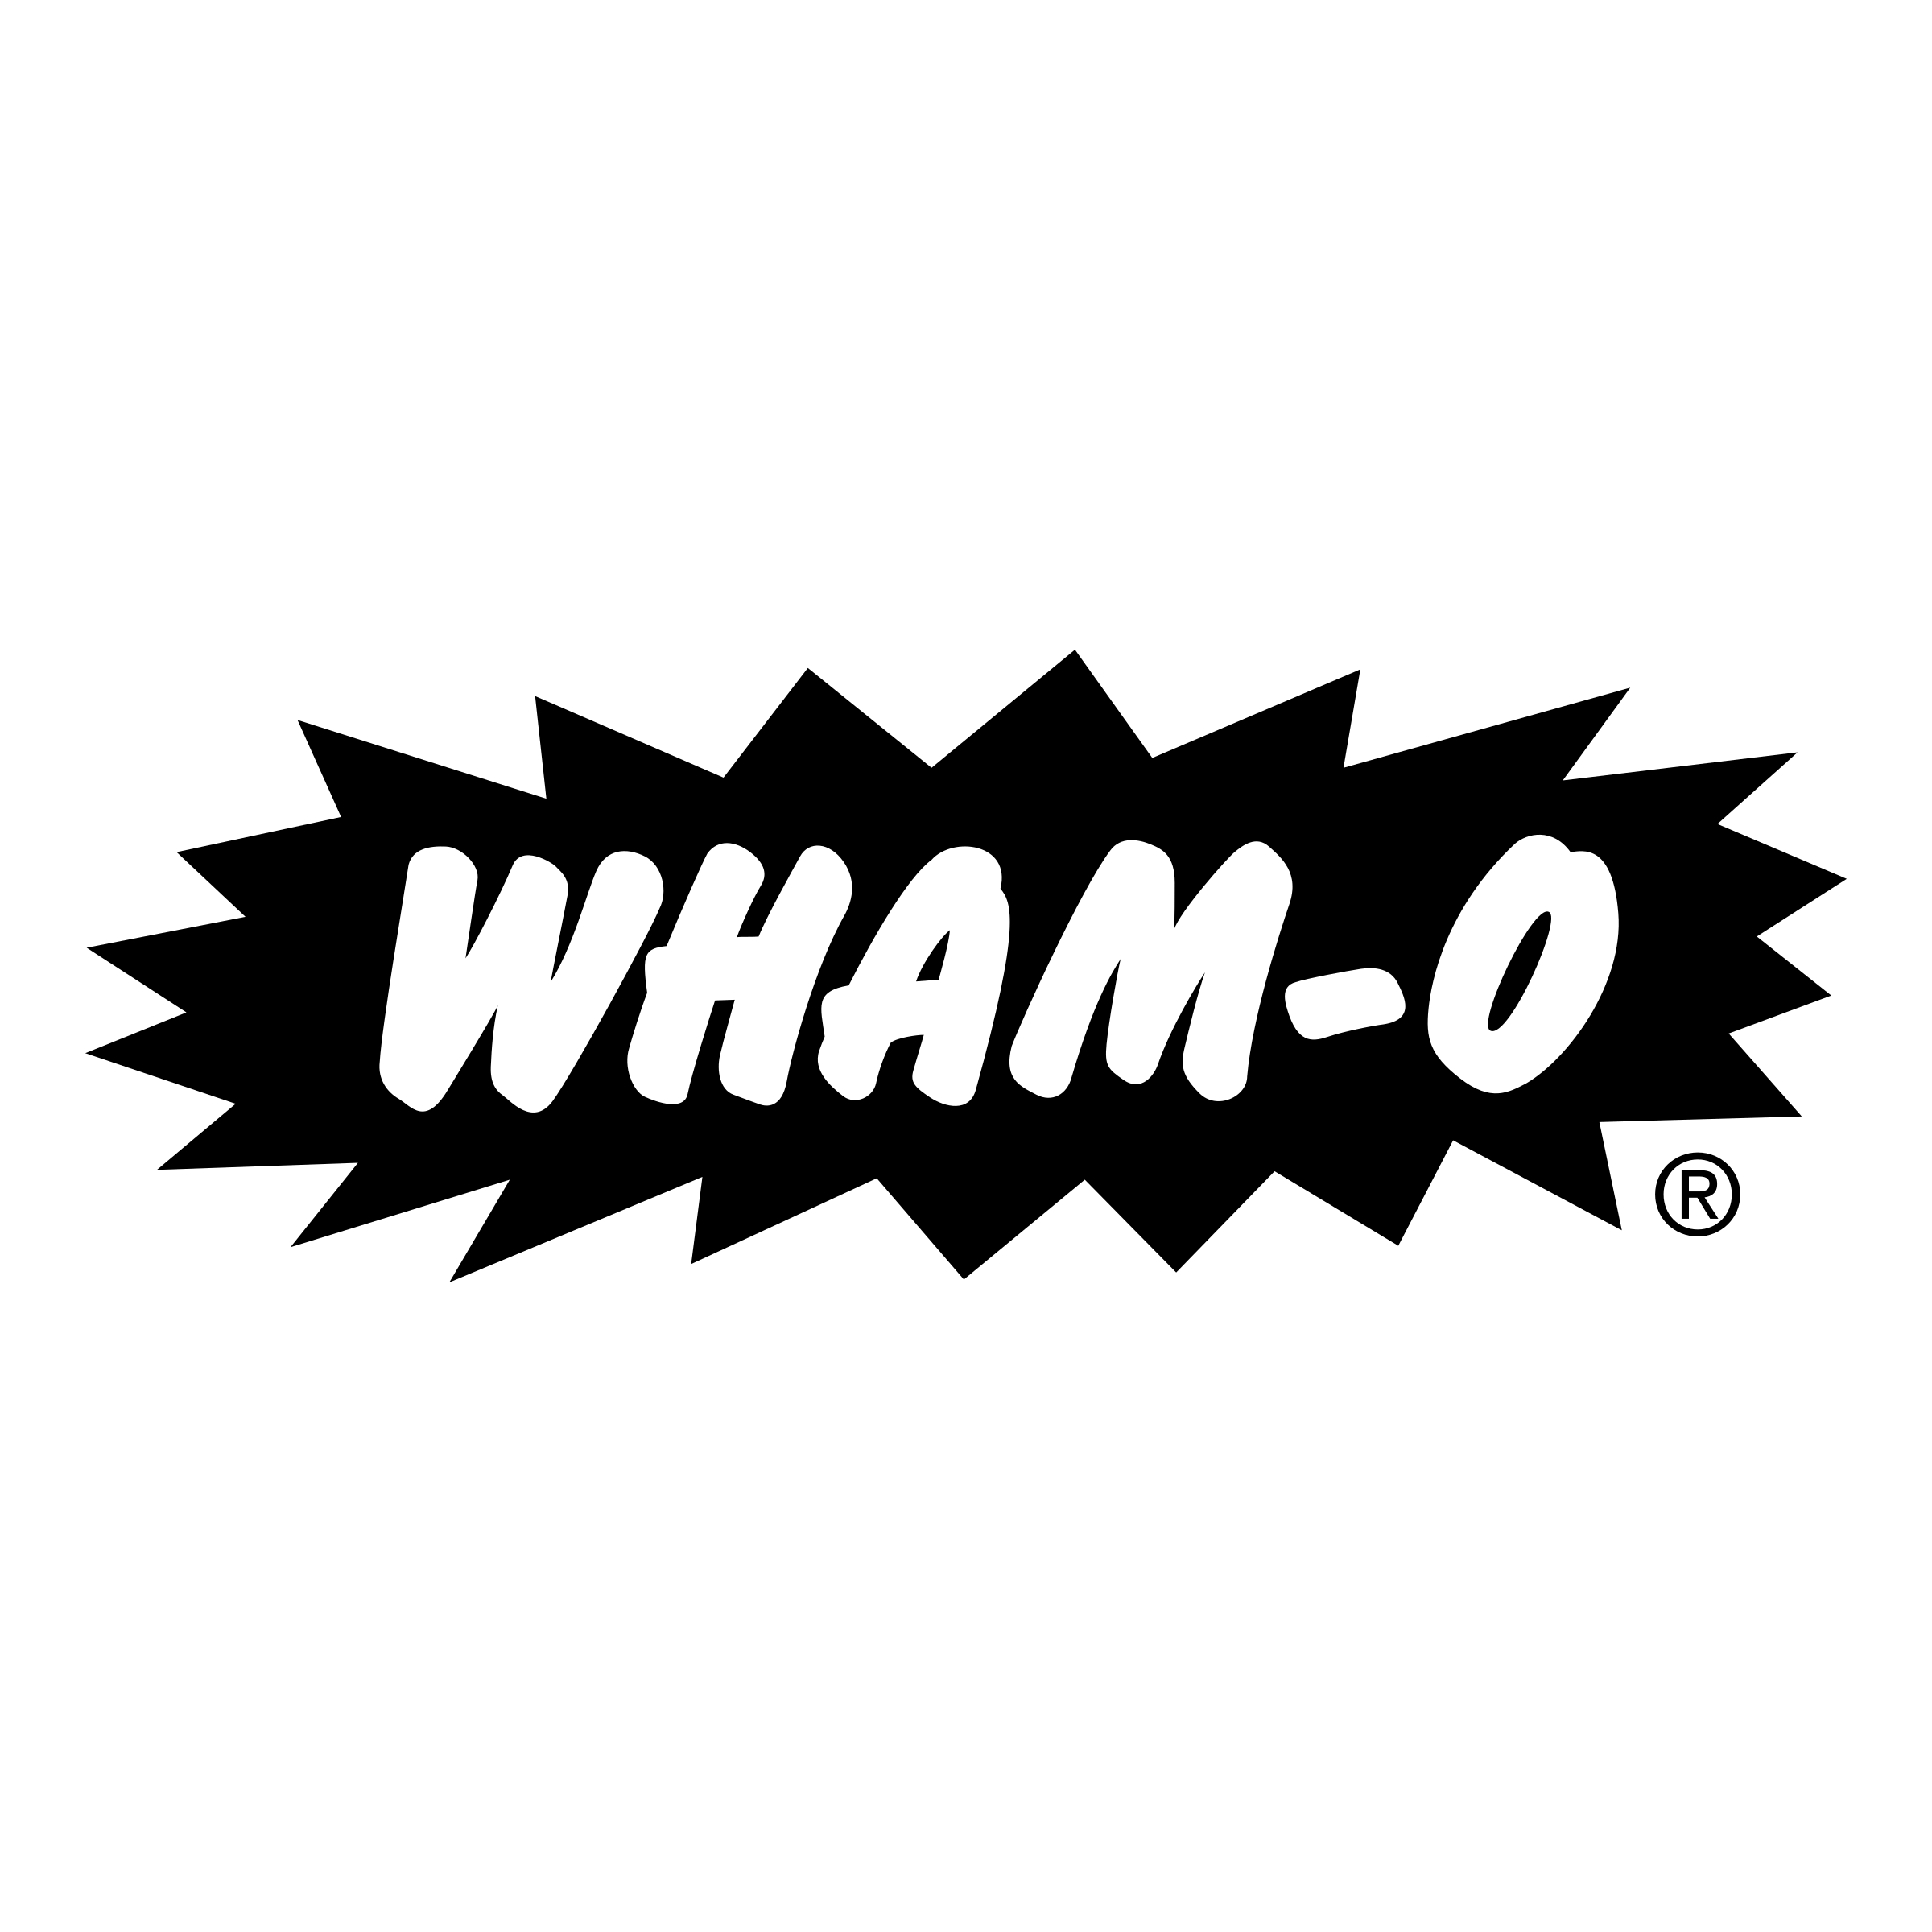 Wham Logo - Wham o Logo PNG Transparent & SVG Vector - Freebie Supply